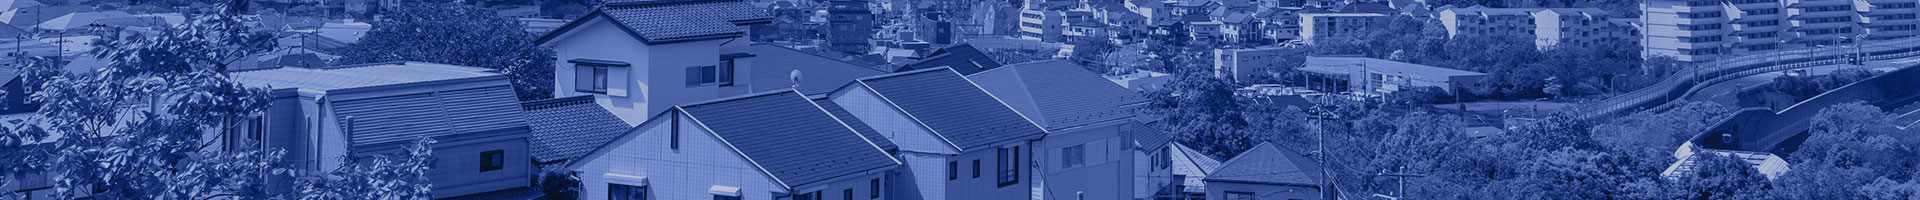 岐阜市の屋根・外壁塗装の工事のことなら株式会社ATプラス